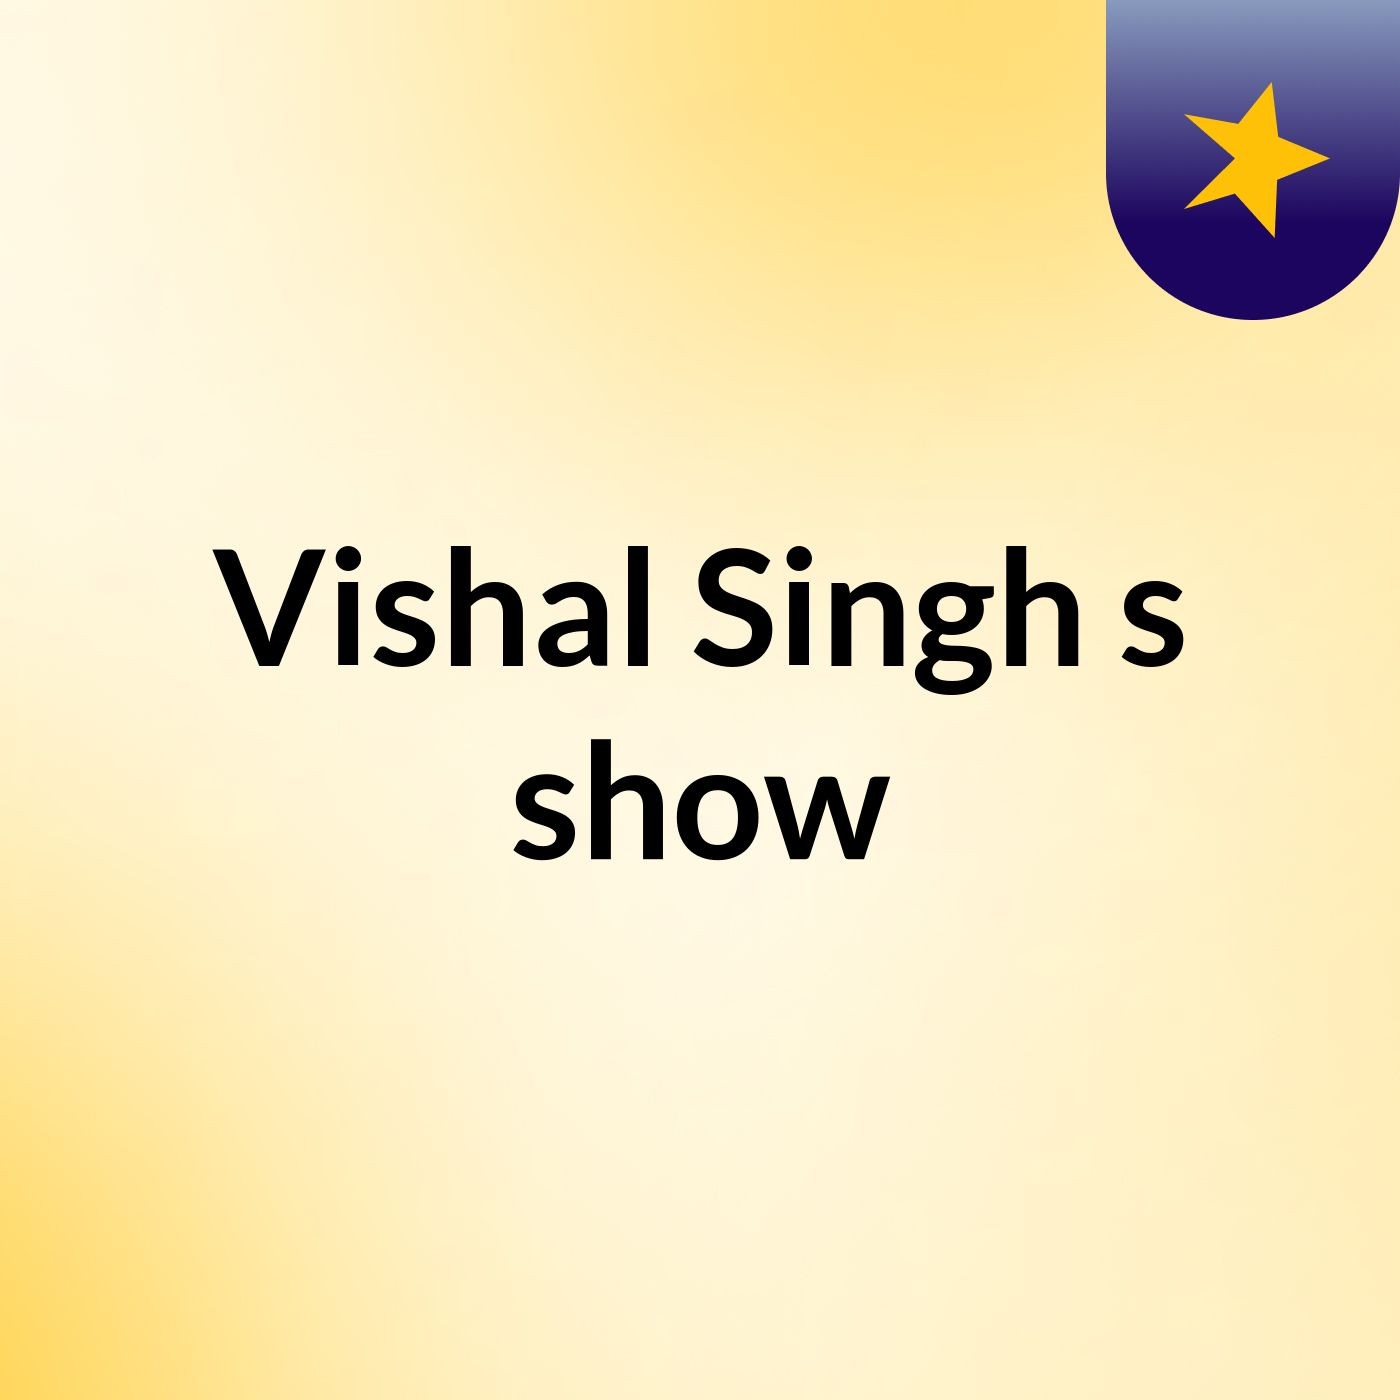 Vishal Singh's show